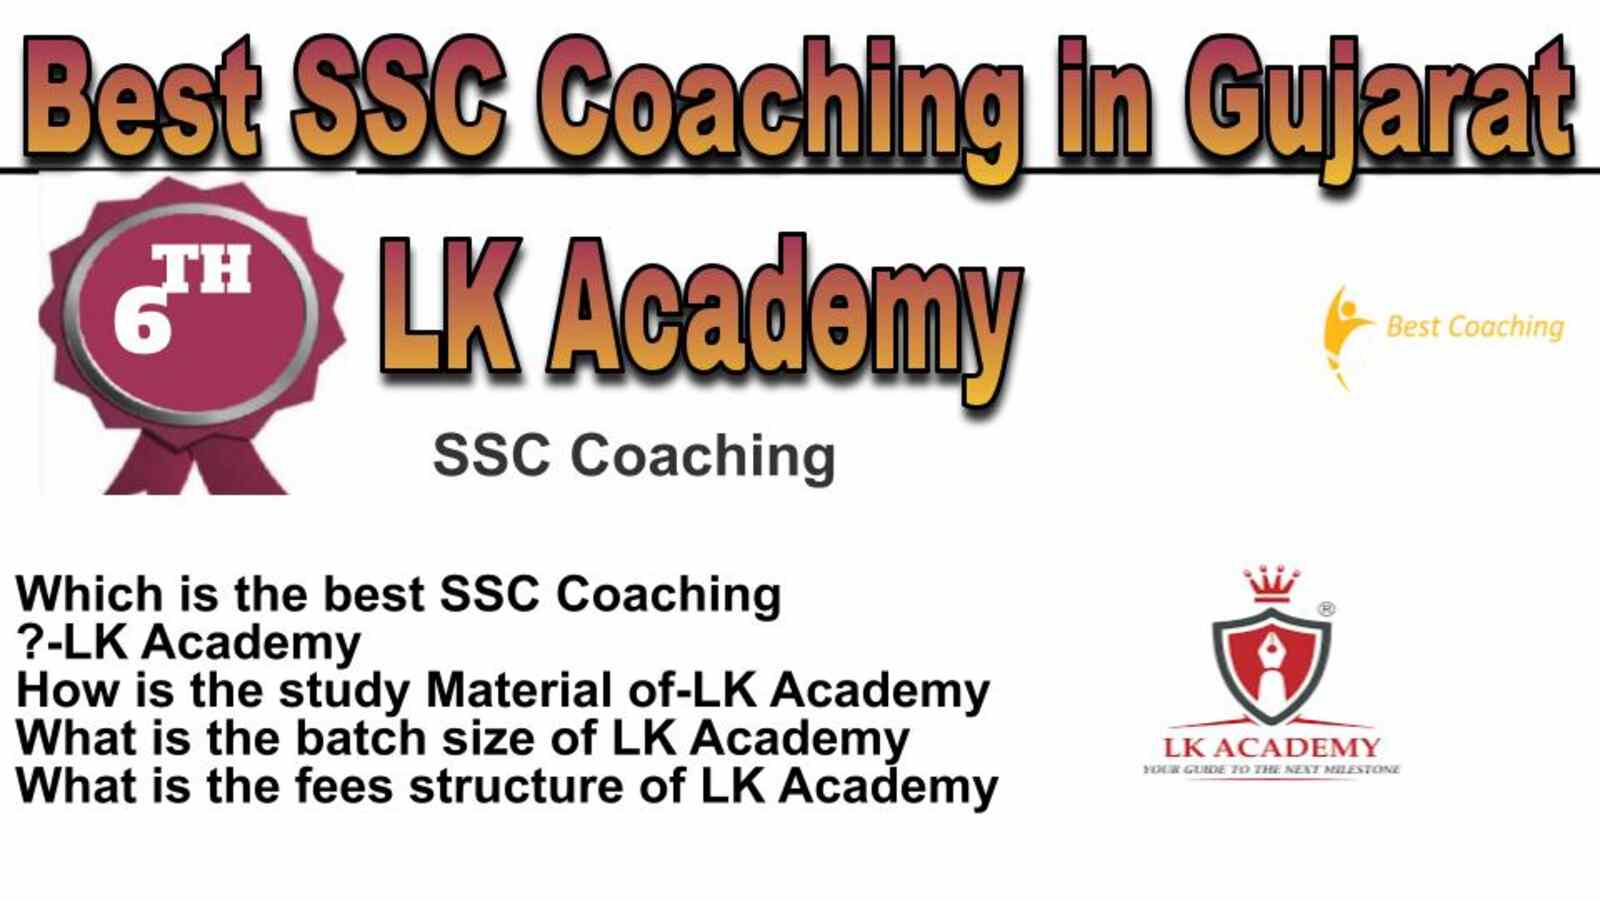 Rank 6 best SSC coaching in Gujarat